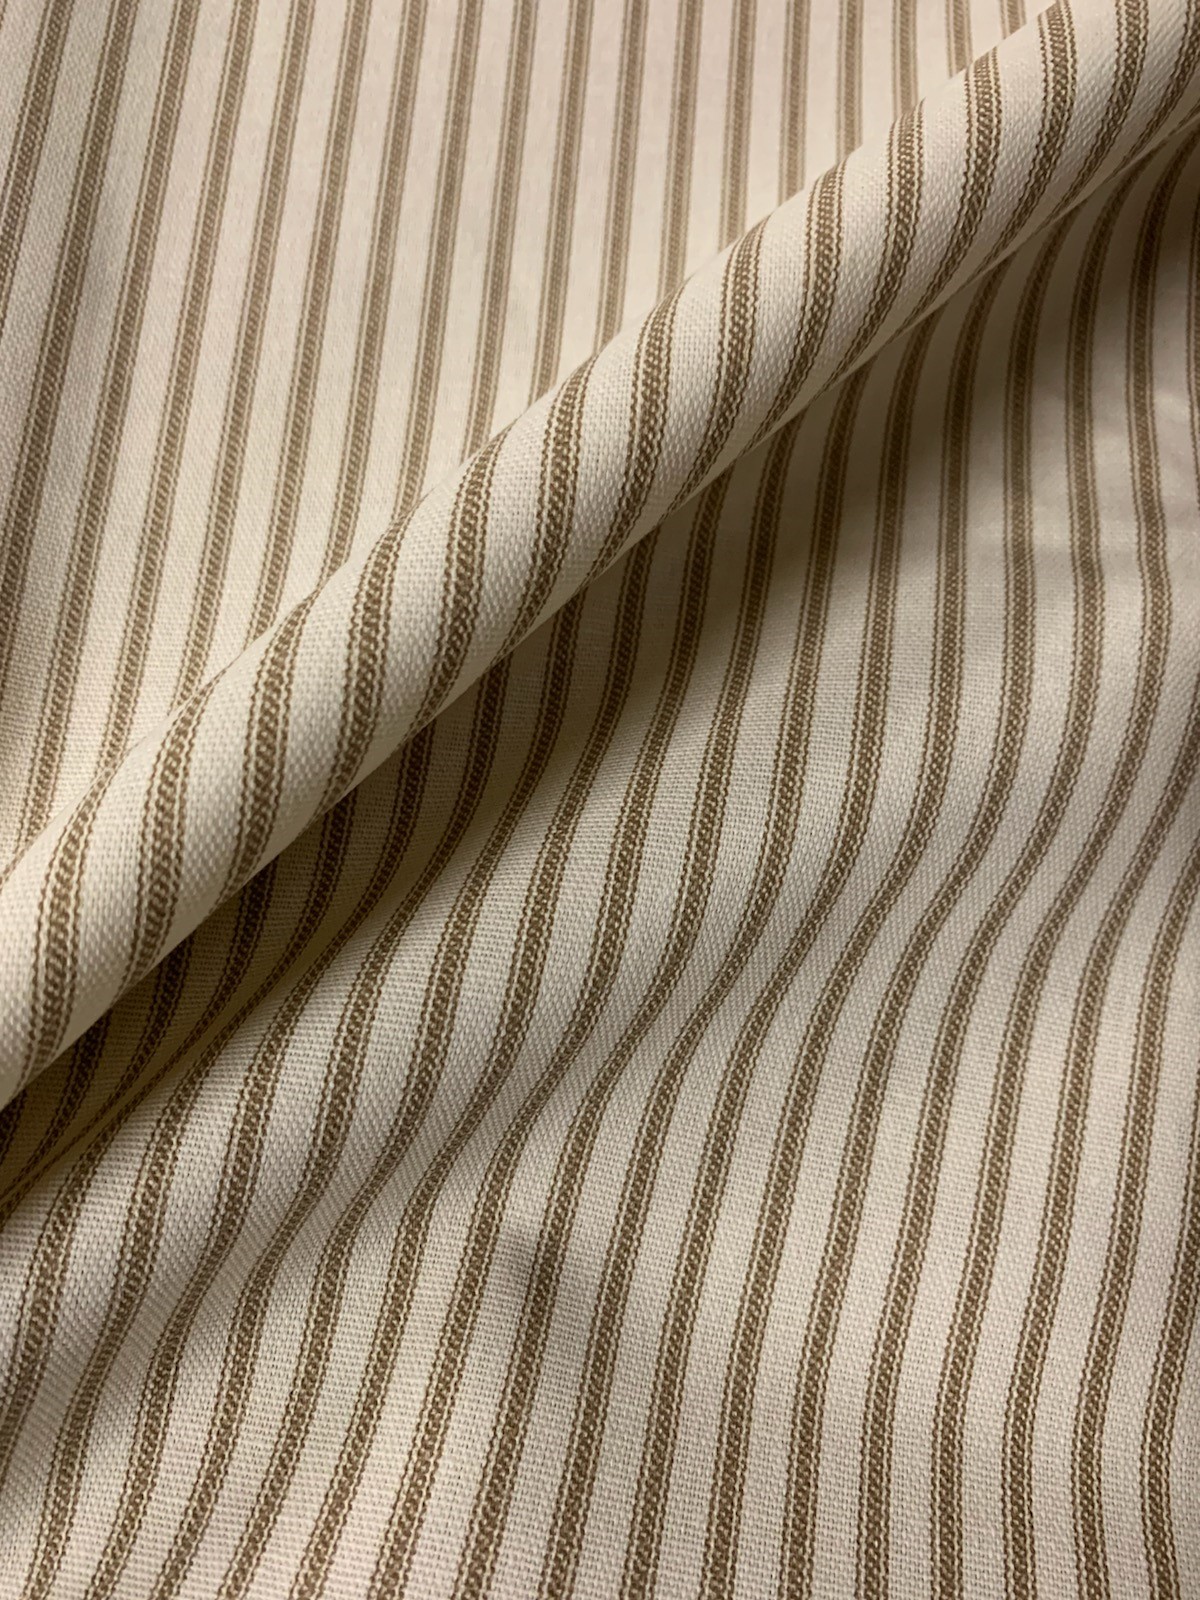 54" Brown Stripe Ticking Fabric - Per Yard